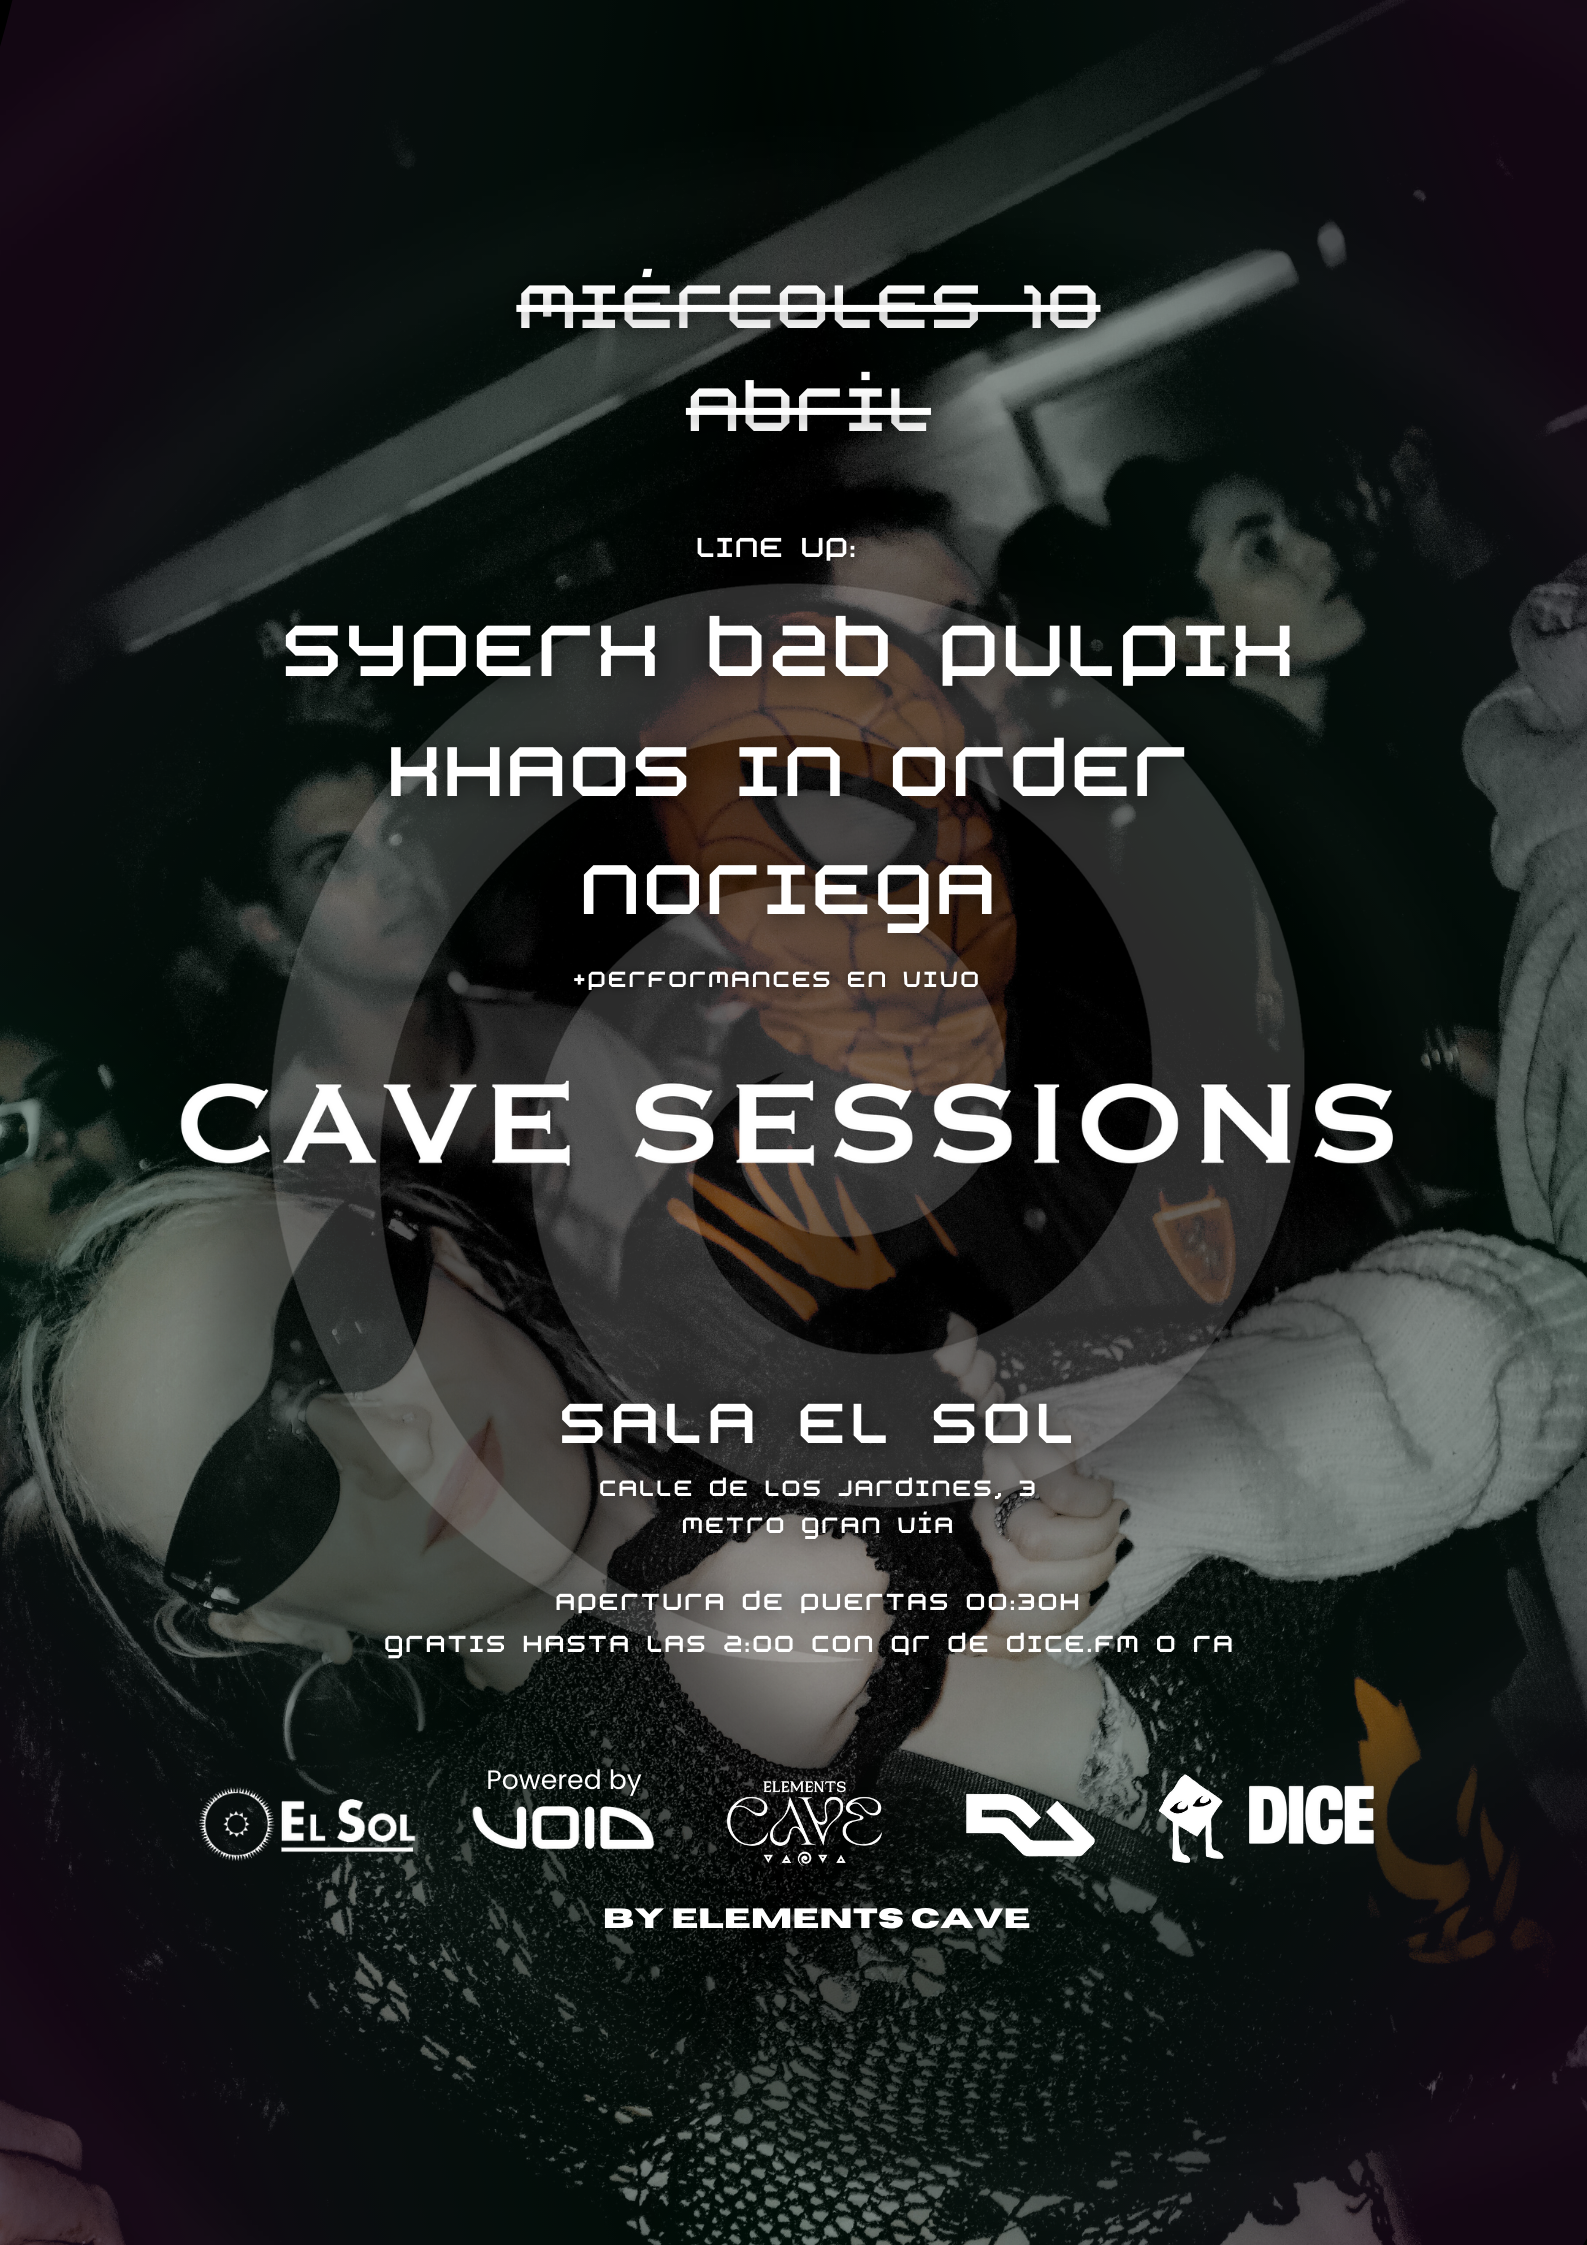 Cave Sessions by EC: Entrada gratis hasta las 2:00 con RA - フライヤー表